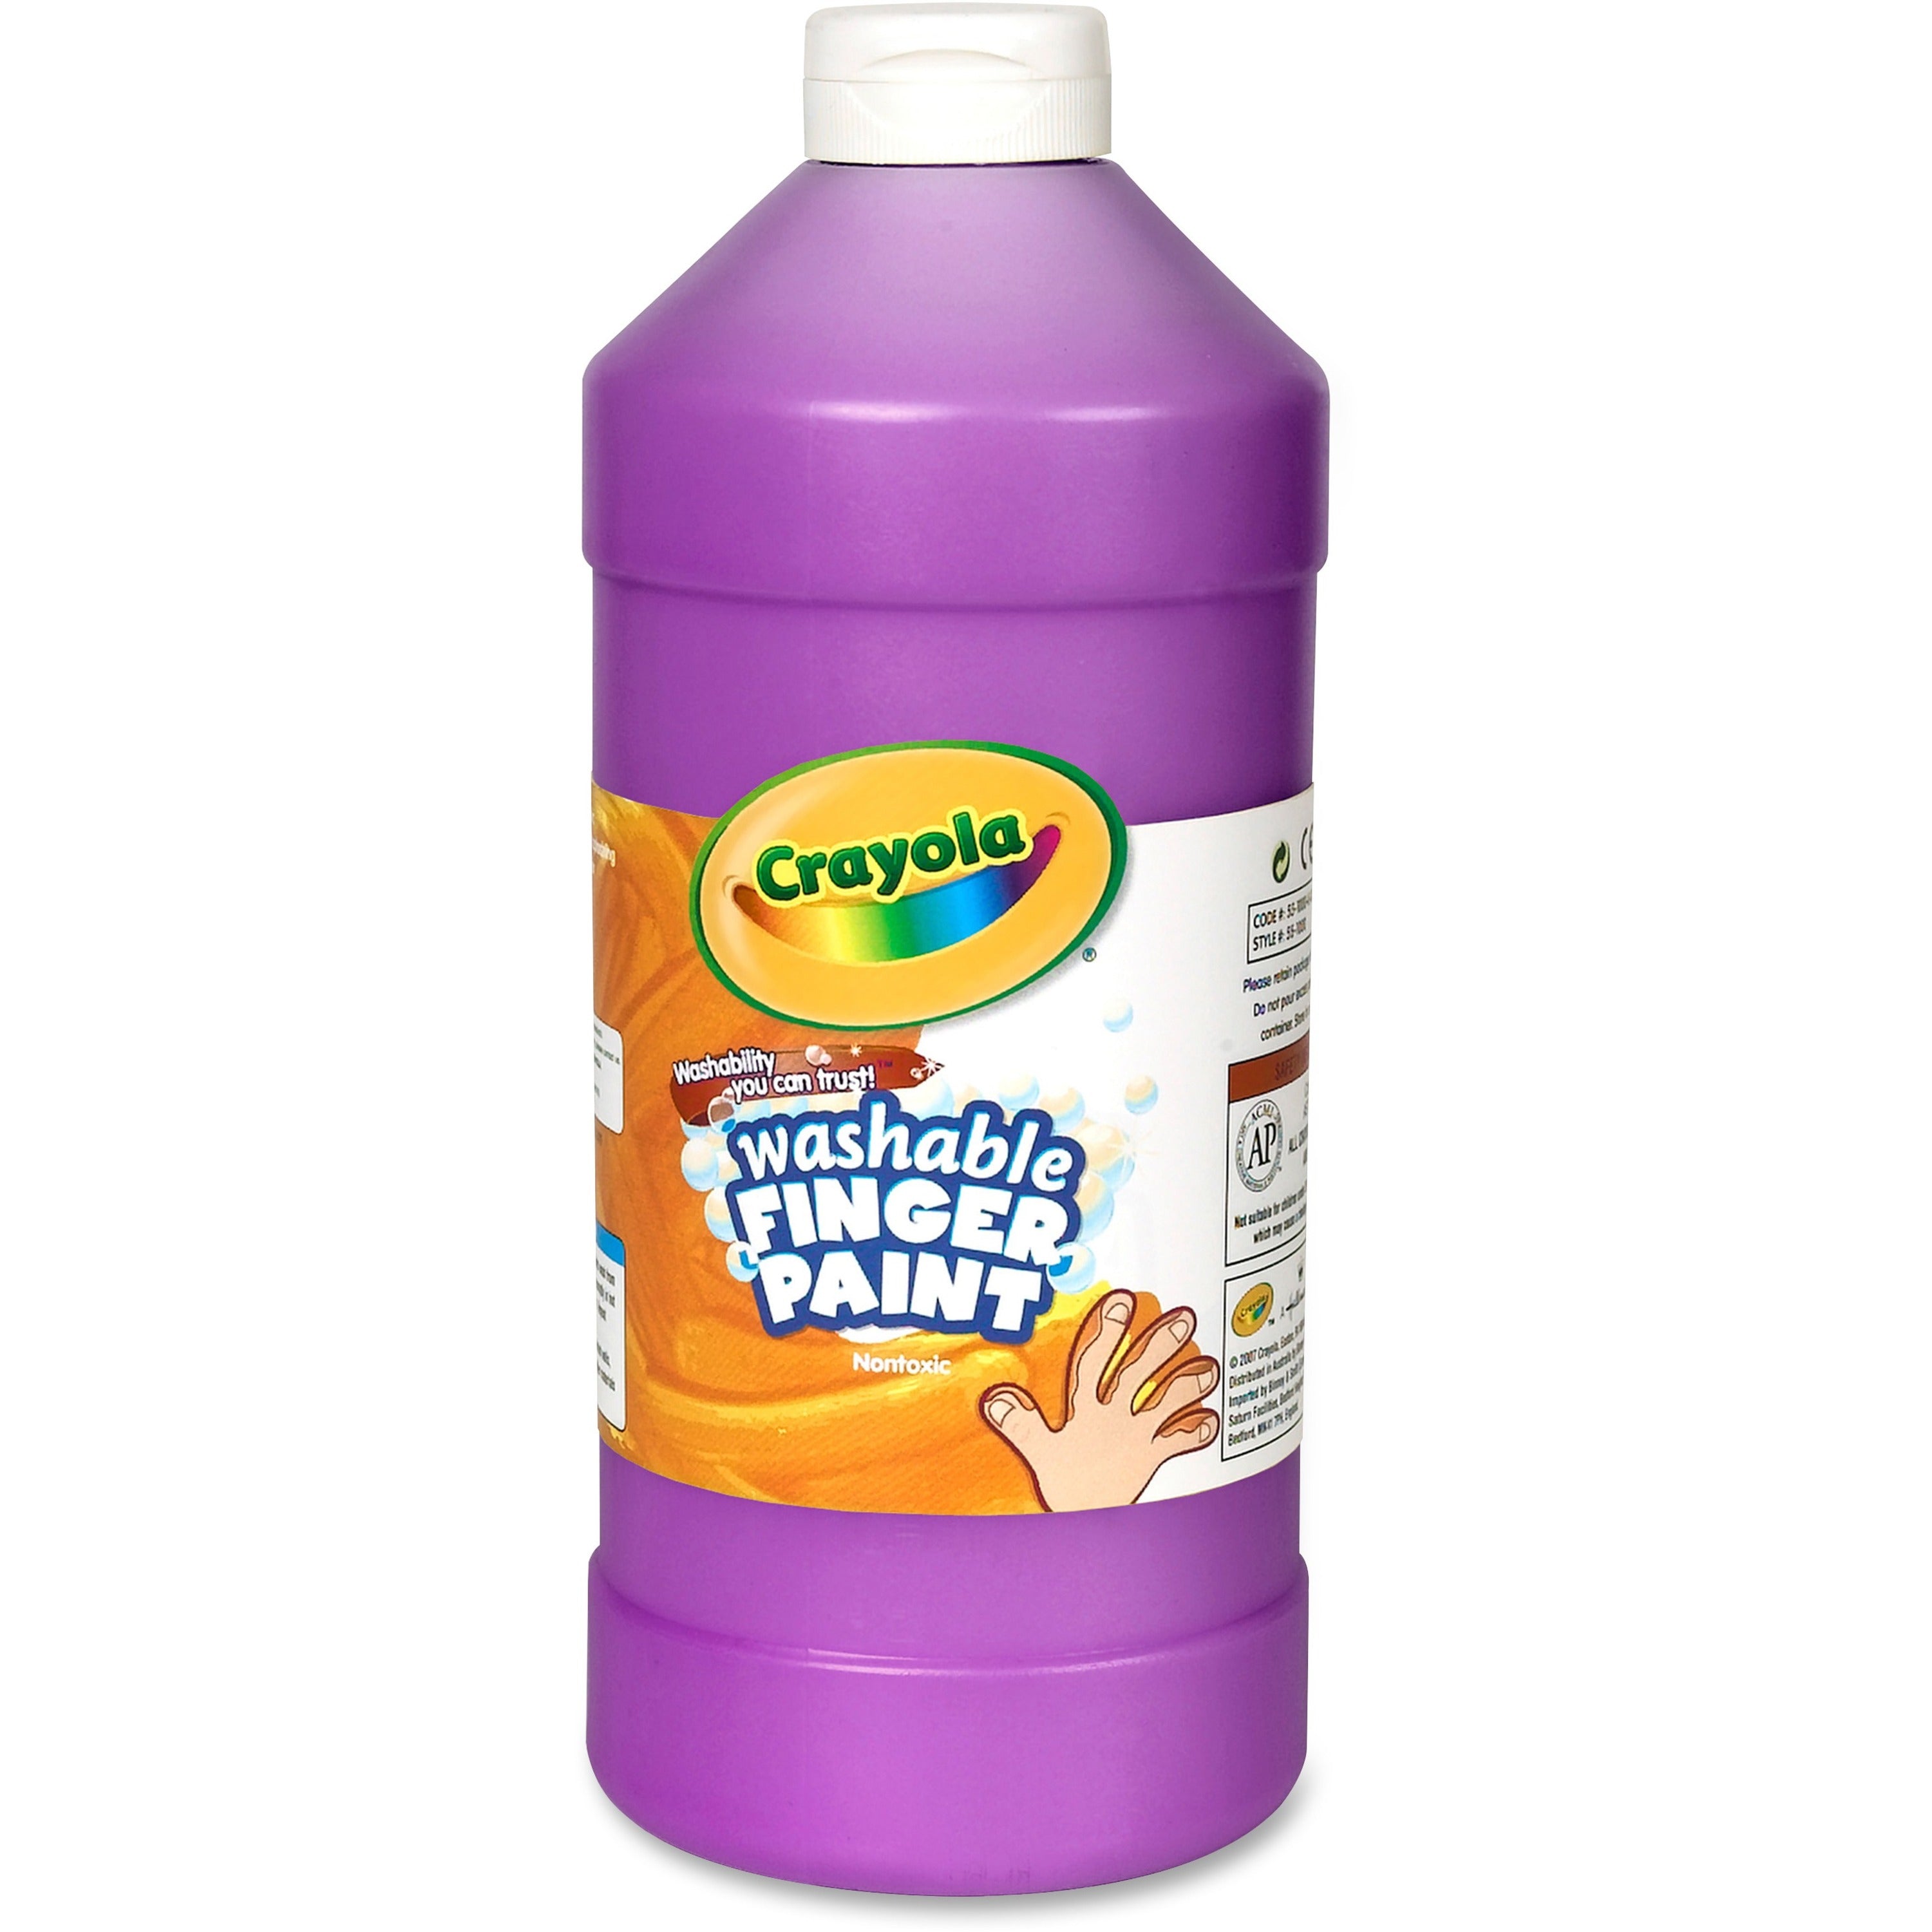 Crayola Washable Finger Paint - 2 lb - 1 Each - Violet - 